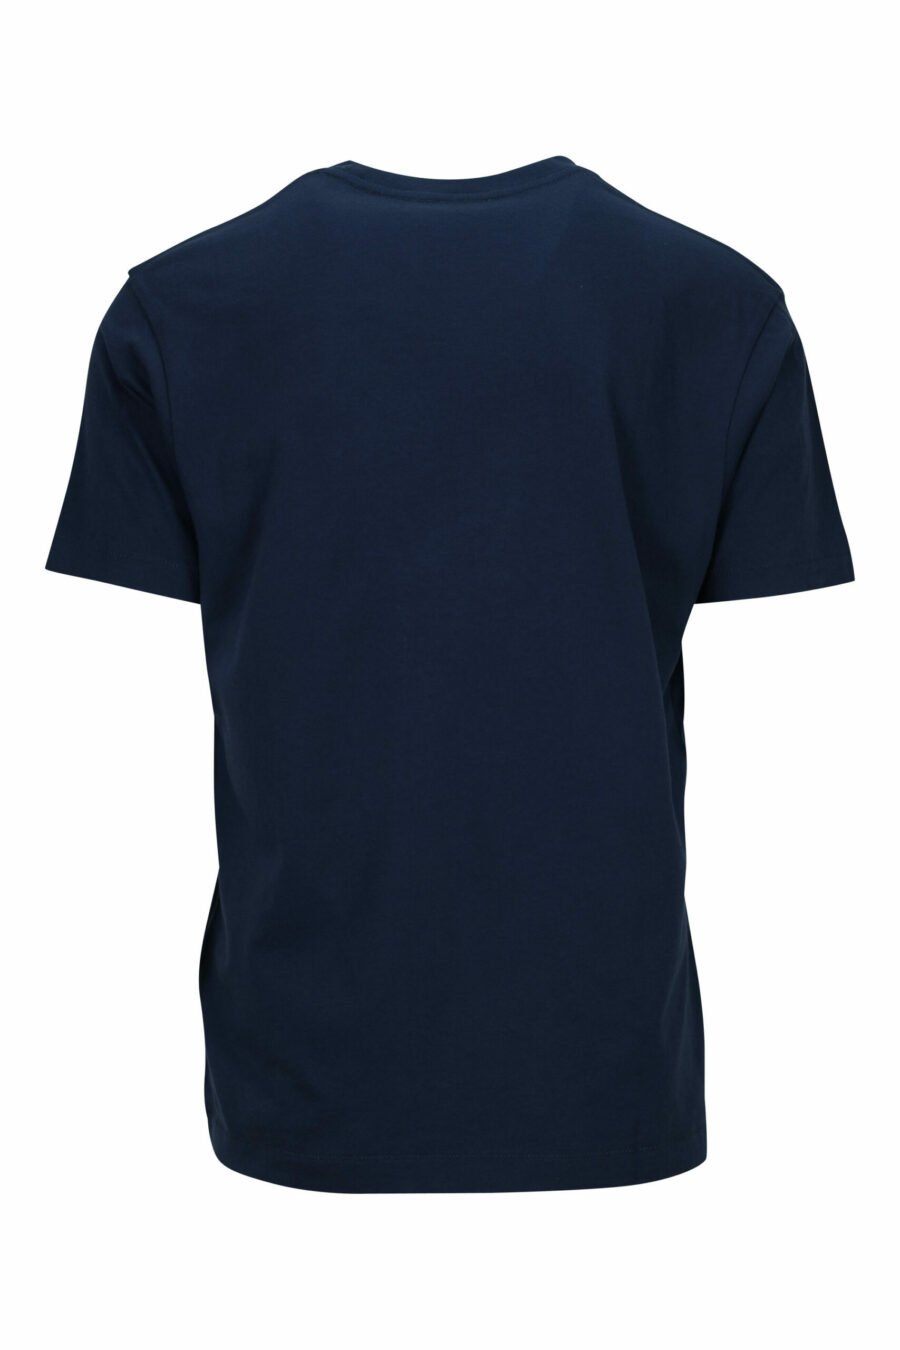 Camiseta azul con minilogo redondo "Kenzo" - 3612230544475 1 scaled